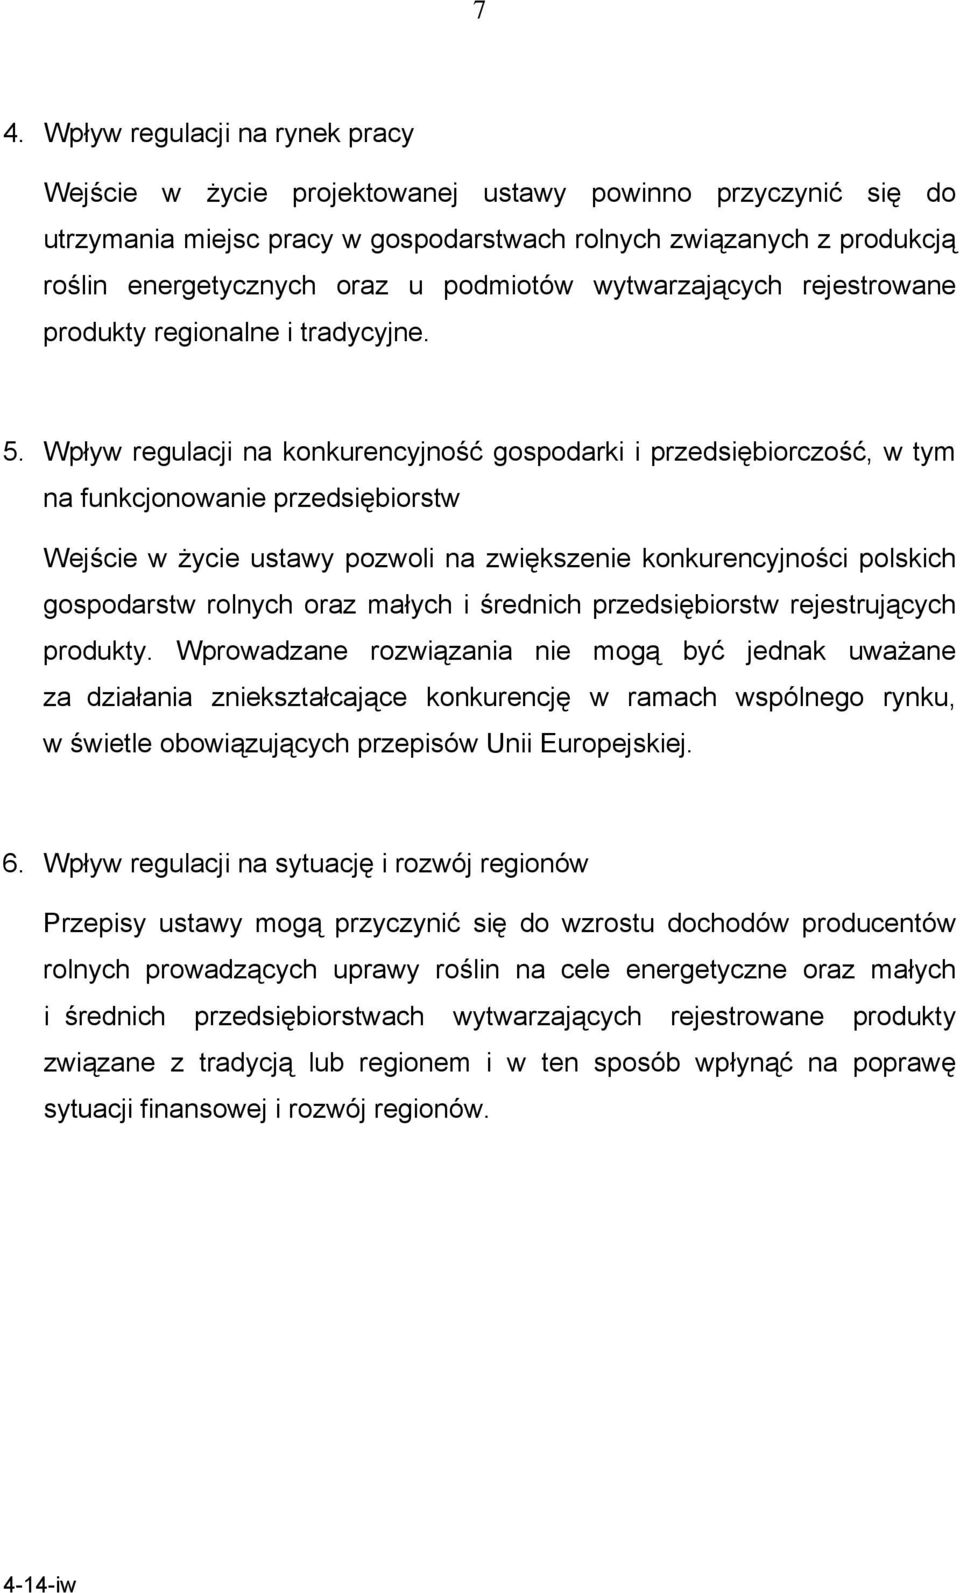 Wpływ regulacji na konkurencyjność gospodarki i przedsiębiorczość, w tym na funkcjonowanie przedsiębiorstw Wejście w życie ustawy pozwoli na zwiększenie konkurencyjności polskich gospodarstw rolnych